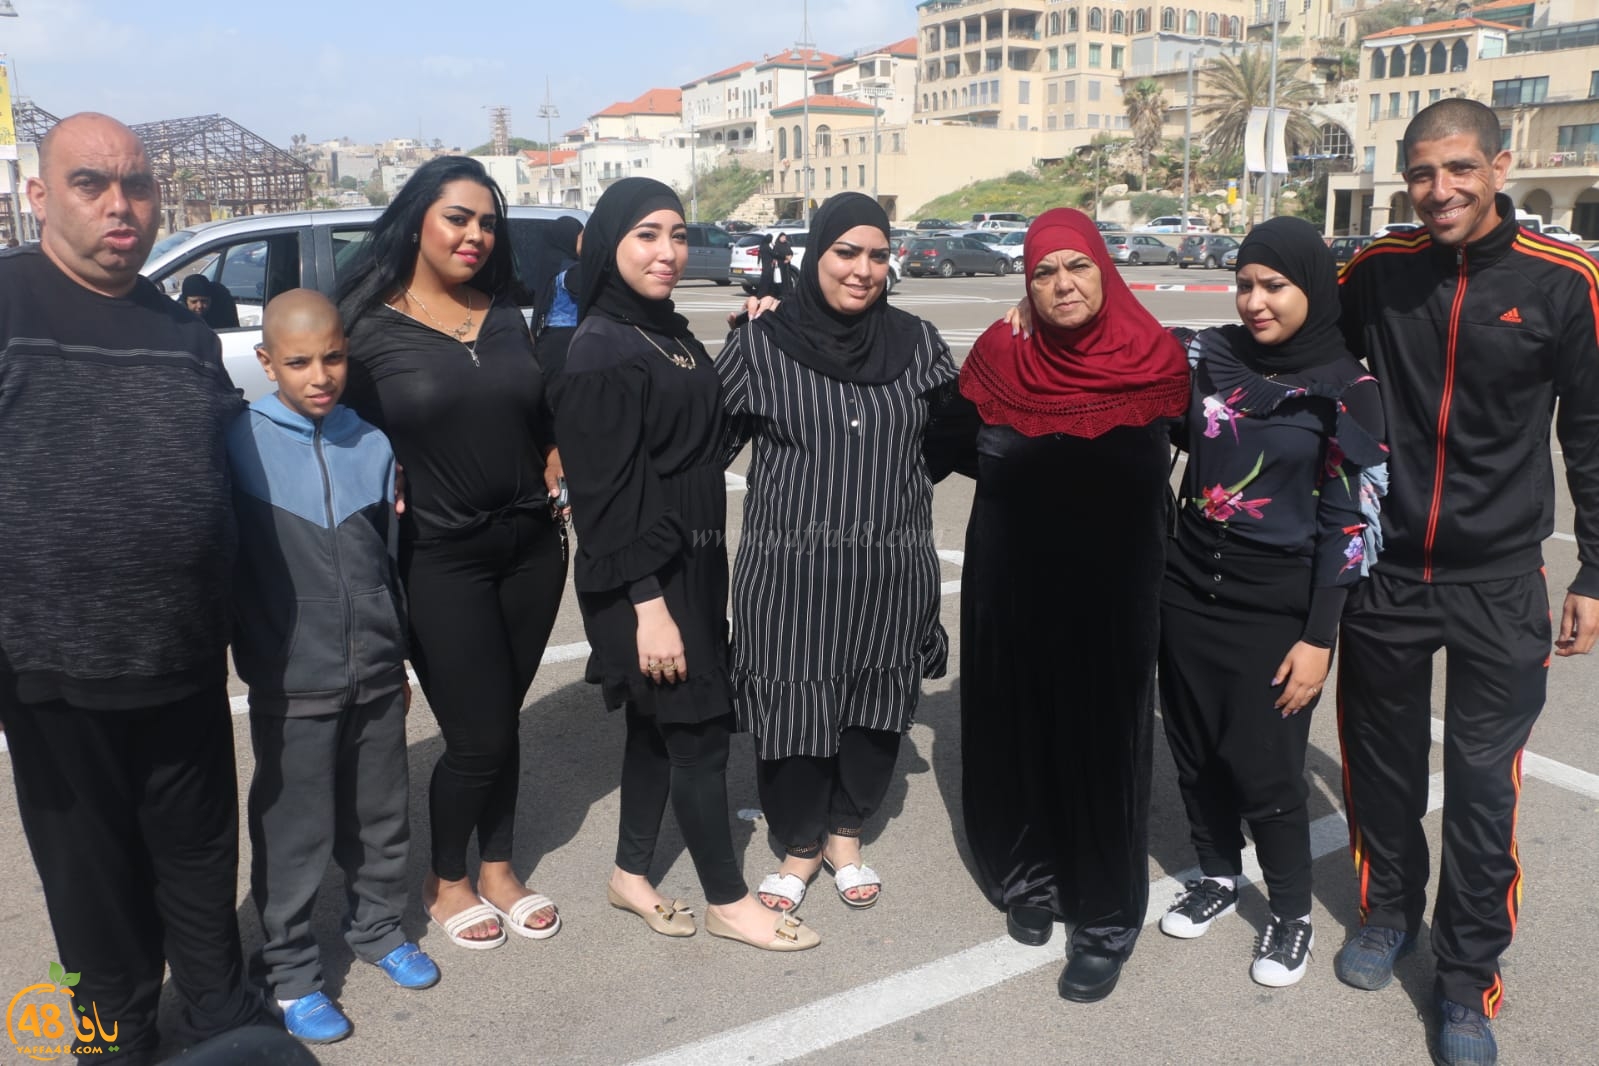 بالصور: انطلاق الفوج الثاني من معتمري مدينة يافا إلى الديار الحجازية لأداء عمرة الربيع 